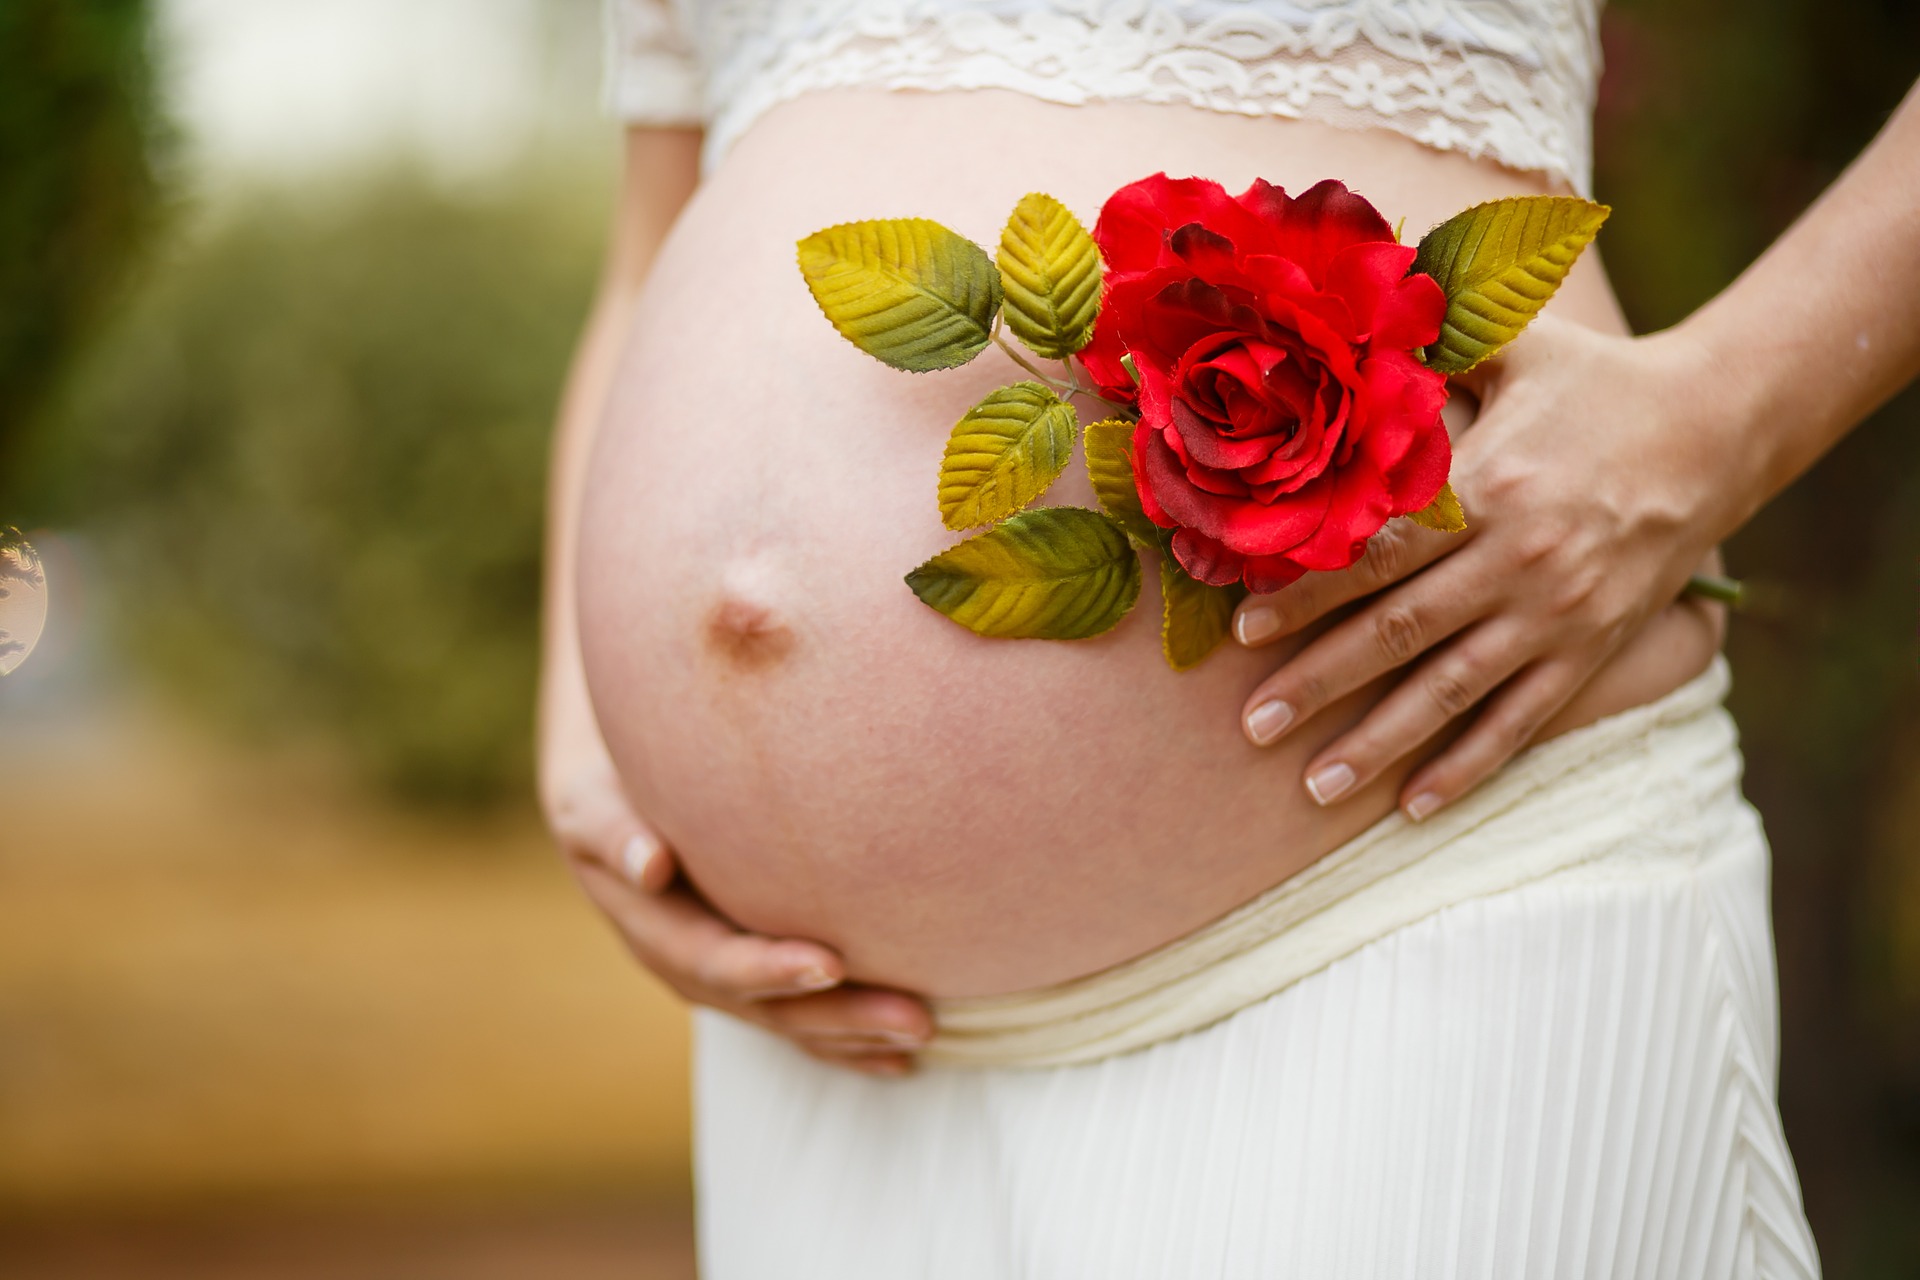 pancia donna in gravidanza